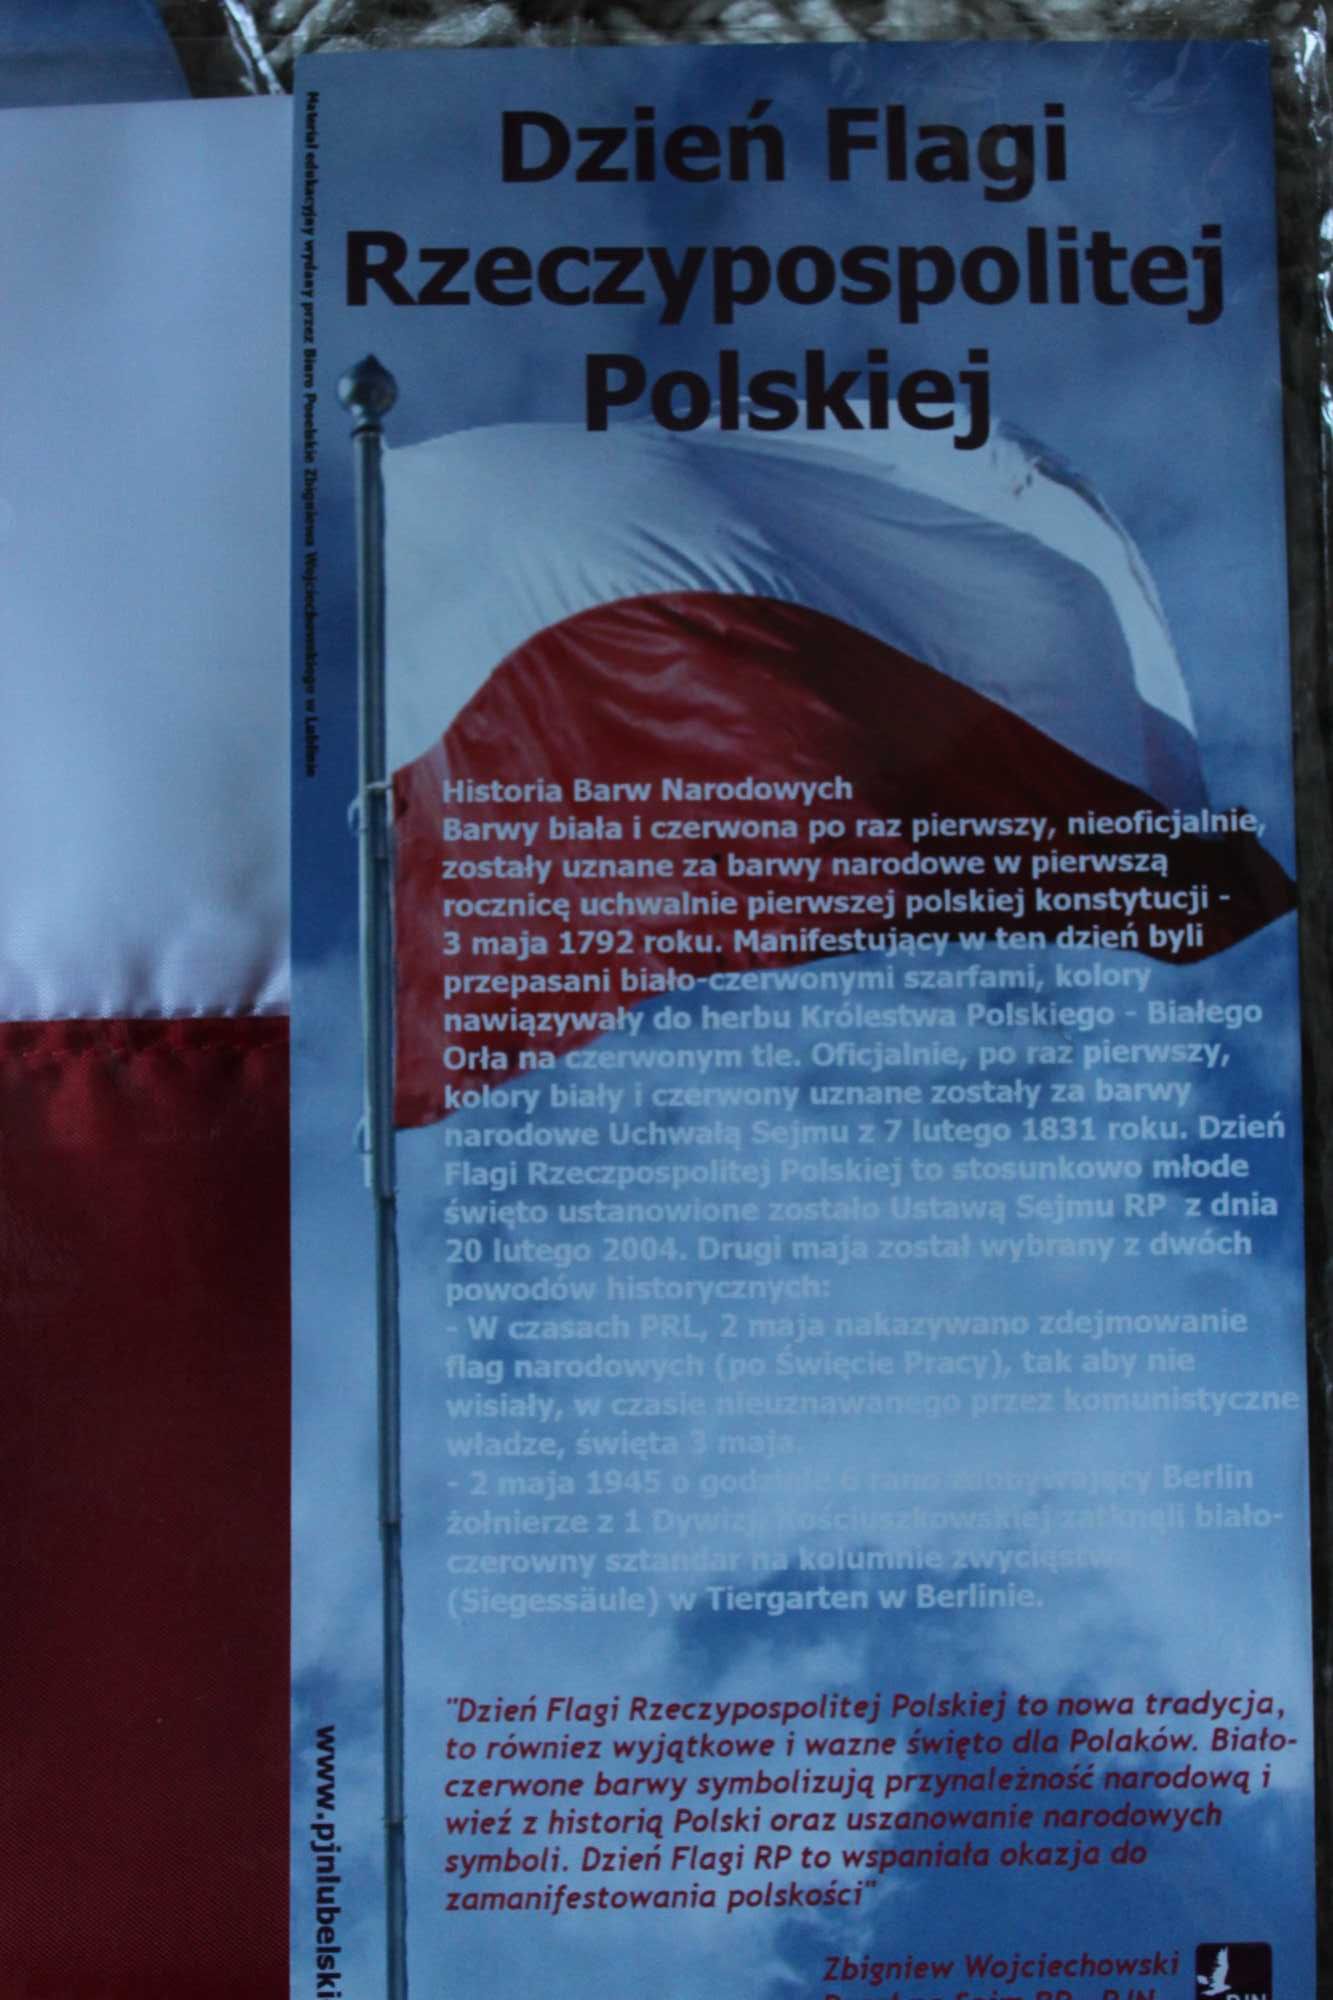 Flaga Polski biało- czerwona
NOWA 100x60